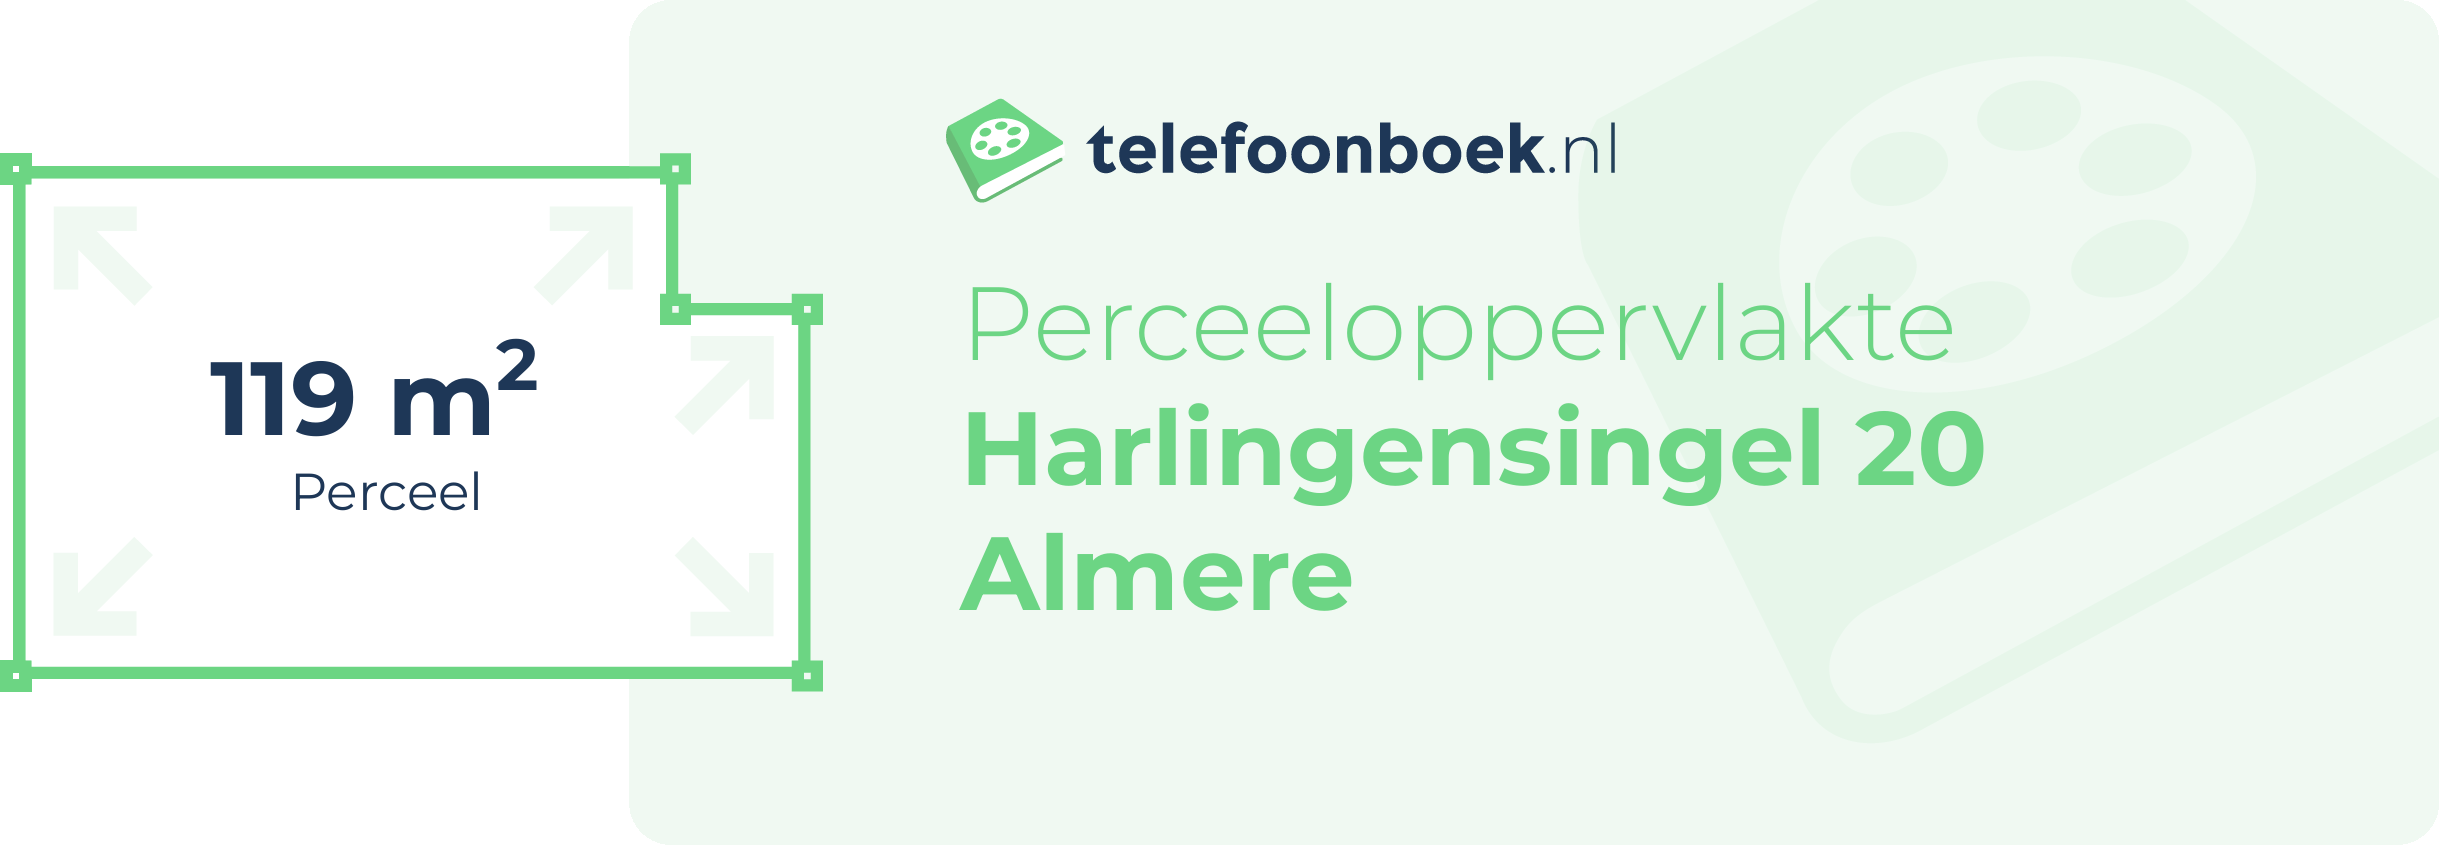 Perceeloppervlakte Harlingensingel 20 Almere